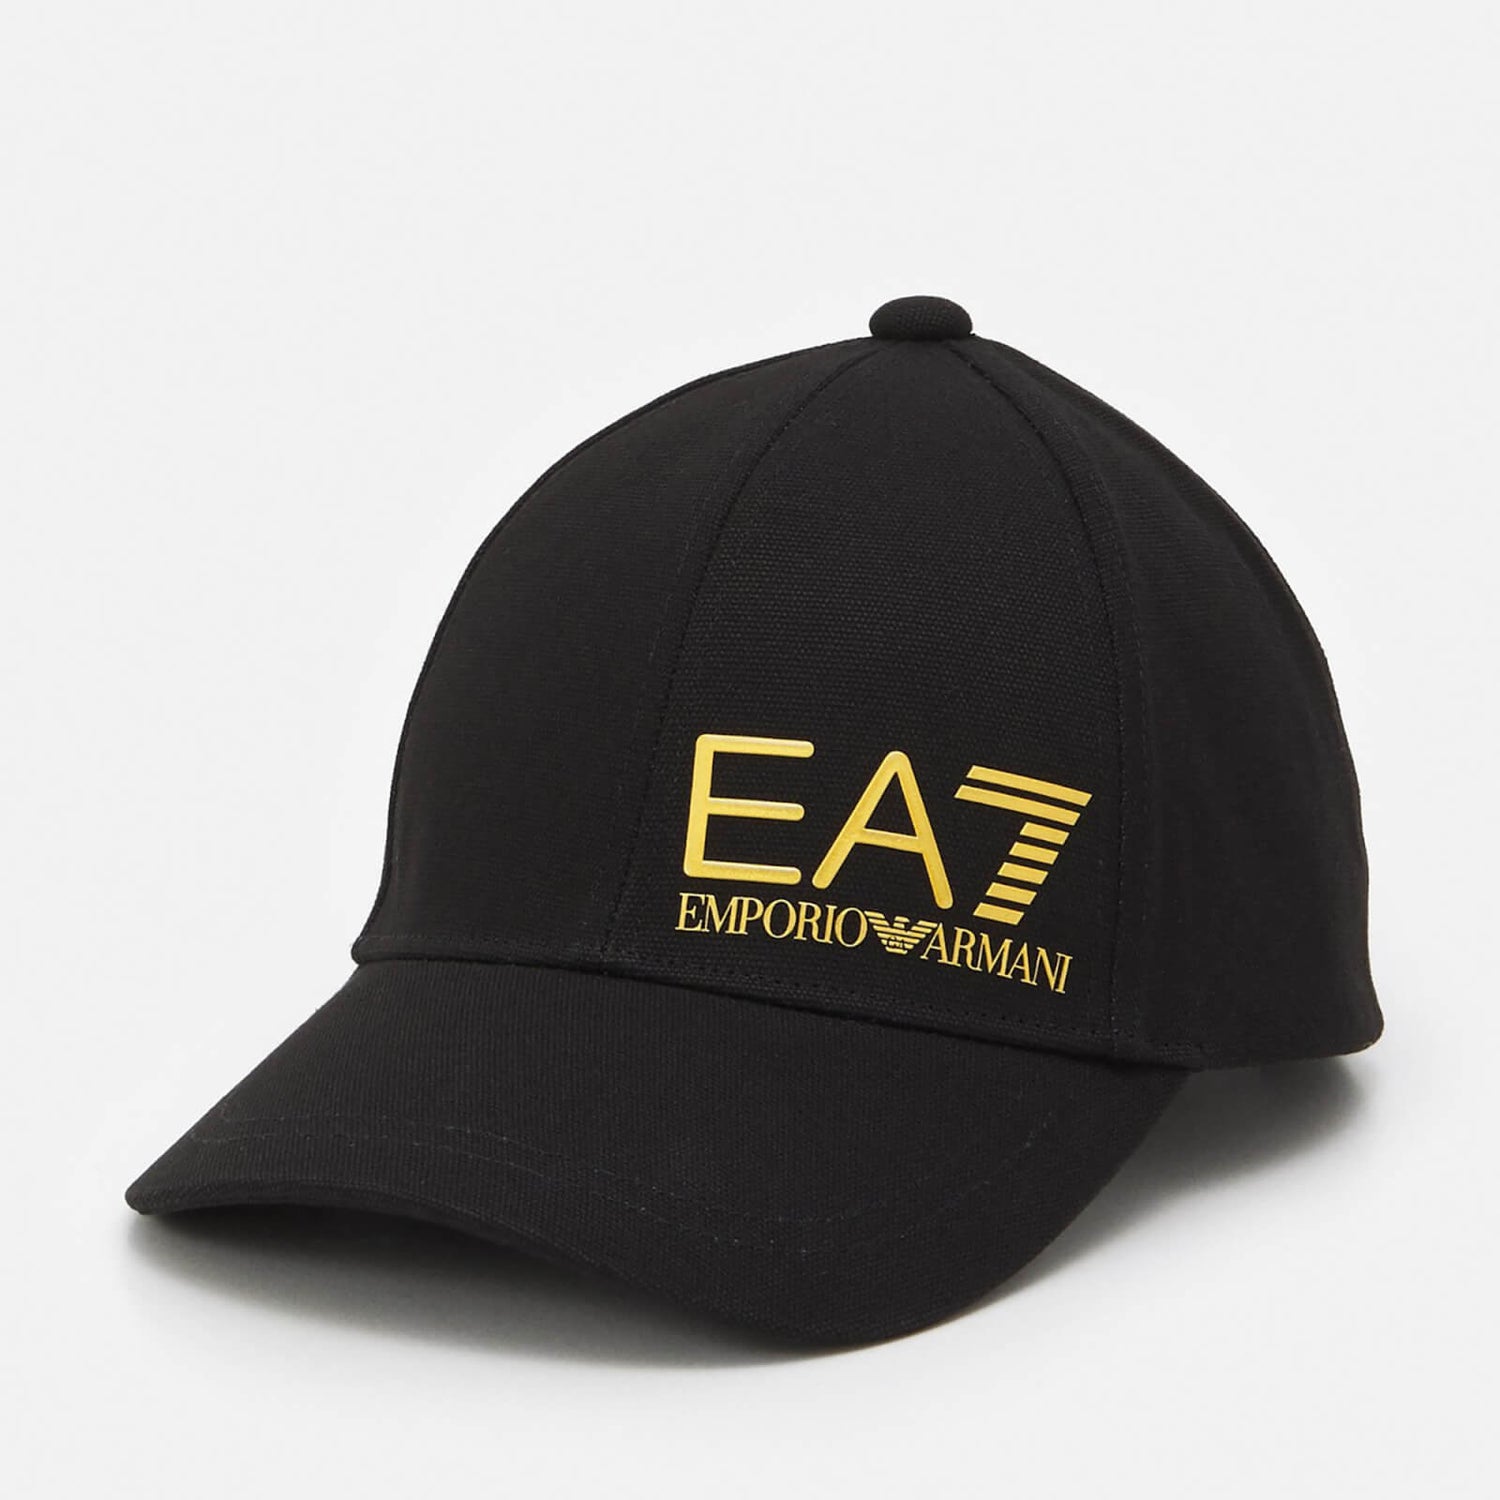 EA7 Men's Train Core Id Cap - Black/Gold